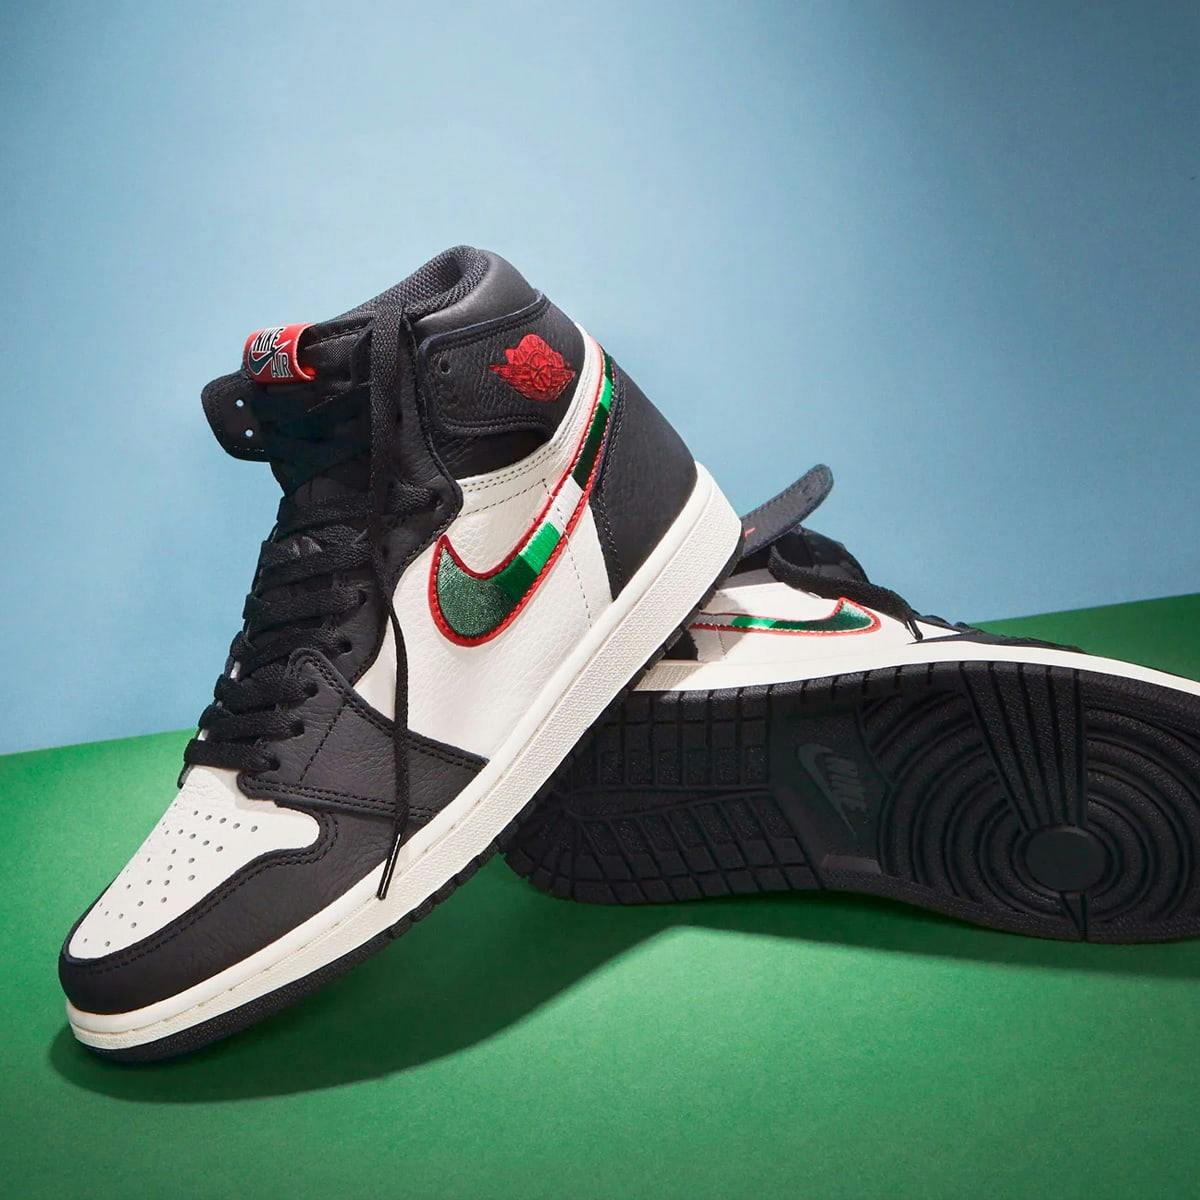 Nike Air Jordan 1 Retro High OG 'Sports Illustrated' - Register Now on ...